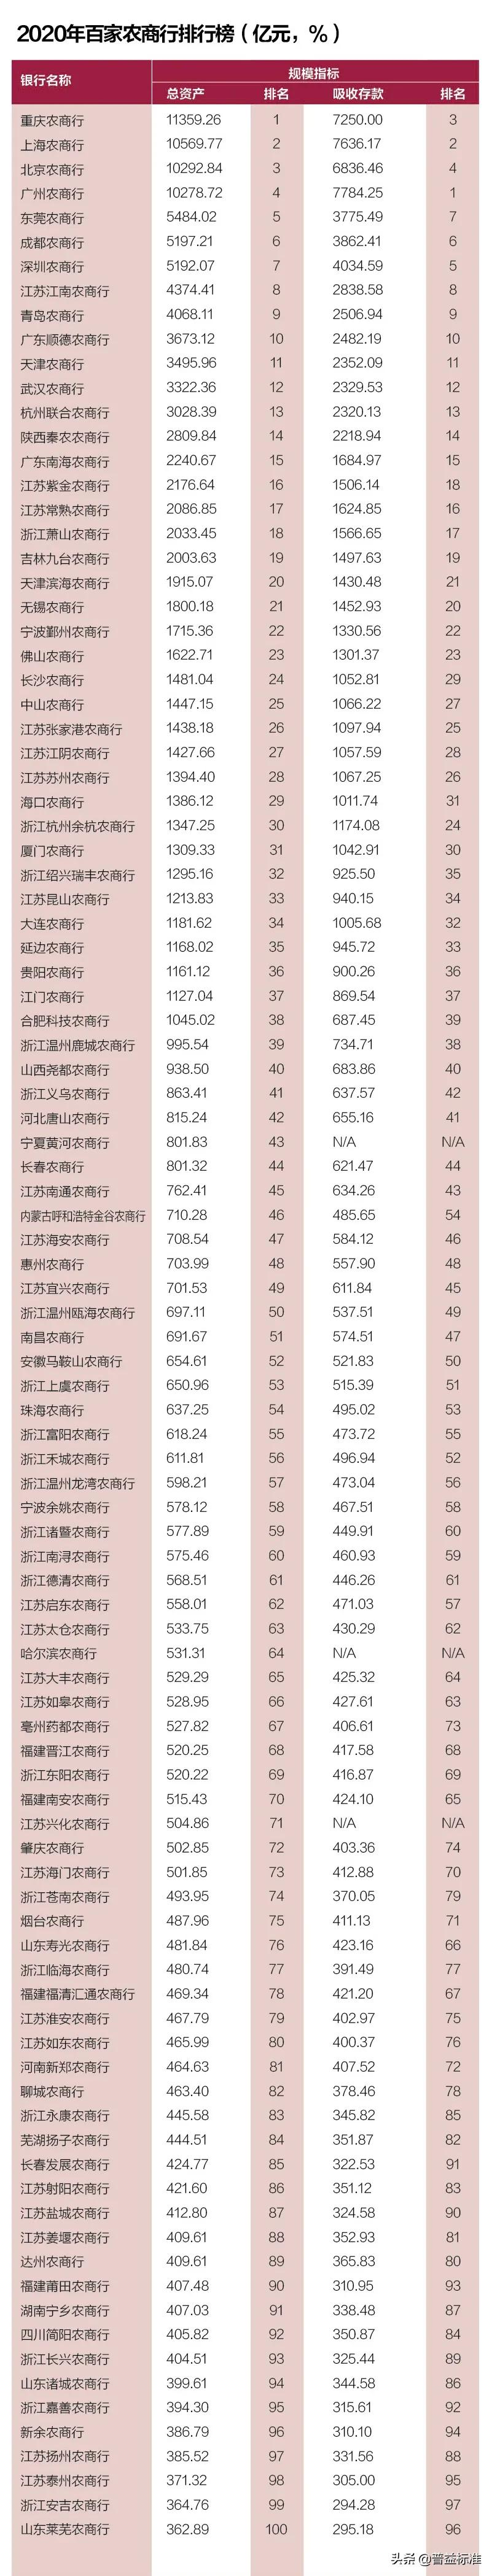 银行业排名(中国银行业排名)